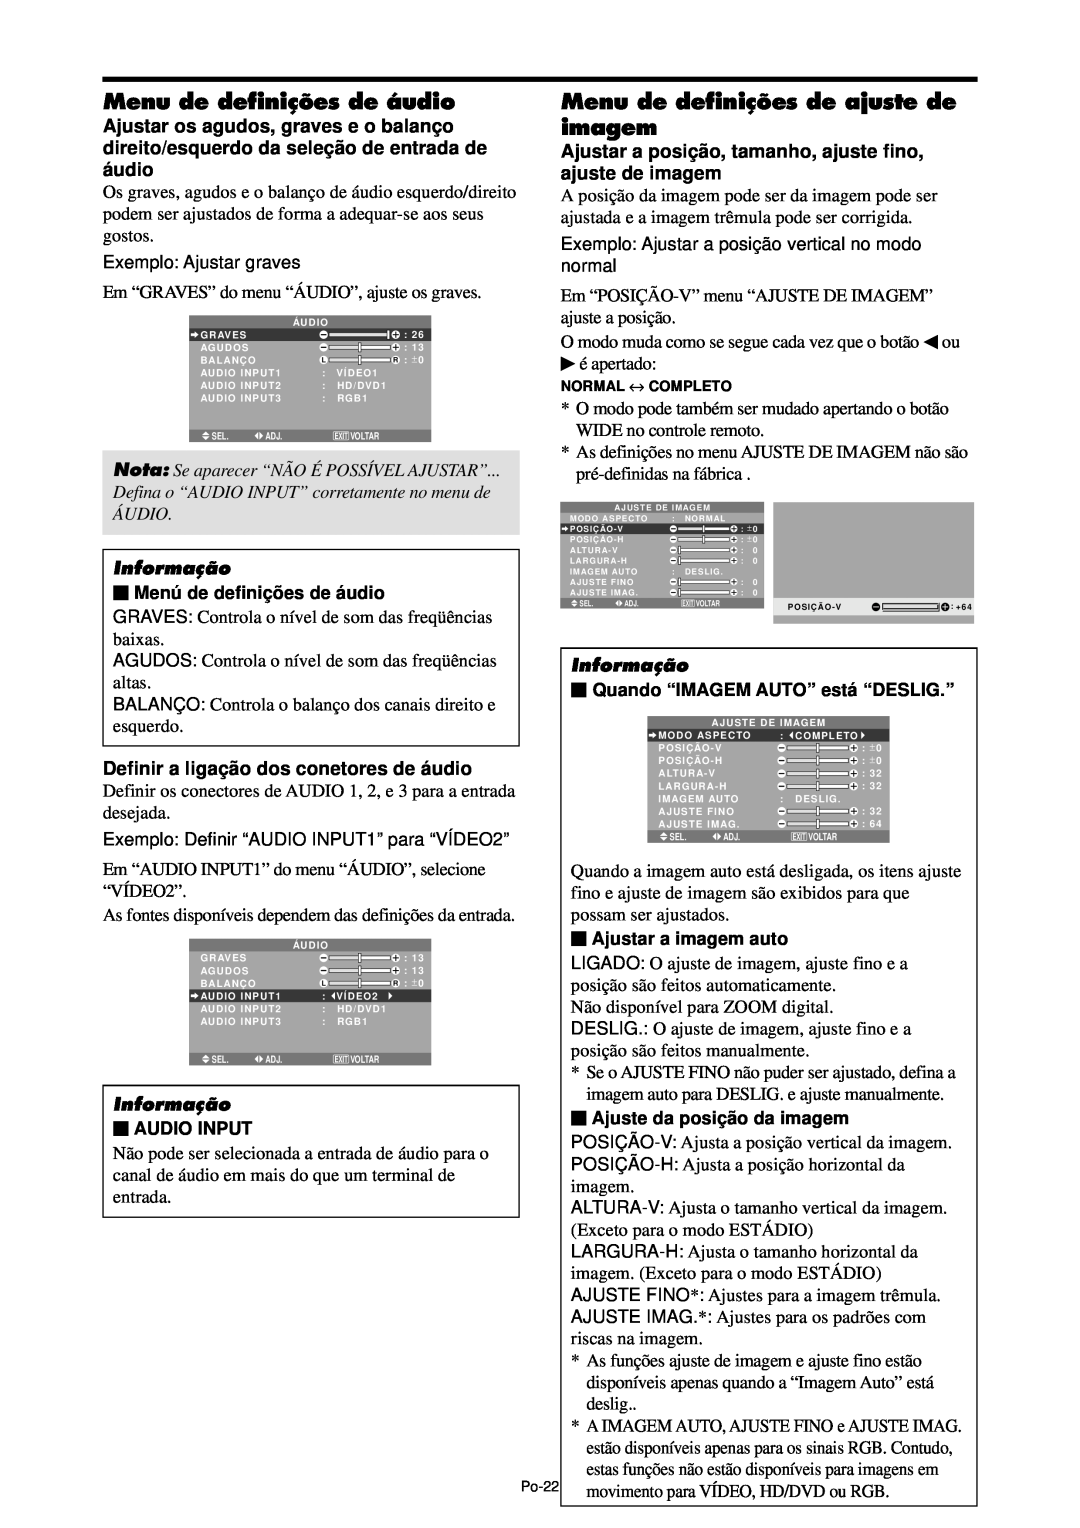 NEC PX-42XM4A, PX-61XM4A manual Menu de definições de áudio, Menu de definições de ajuste de imagem, Informação, Audio Input 